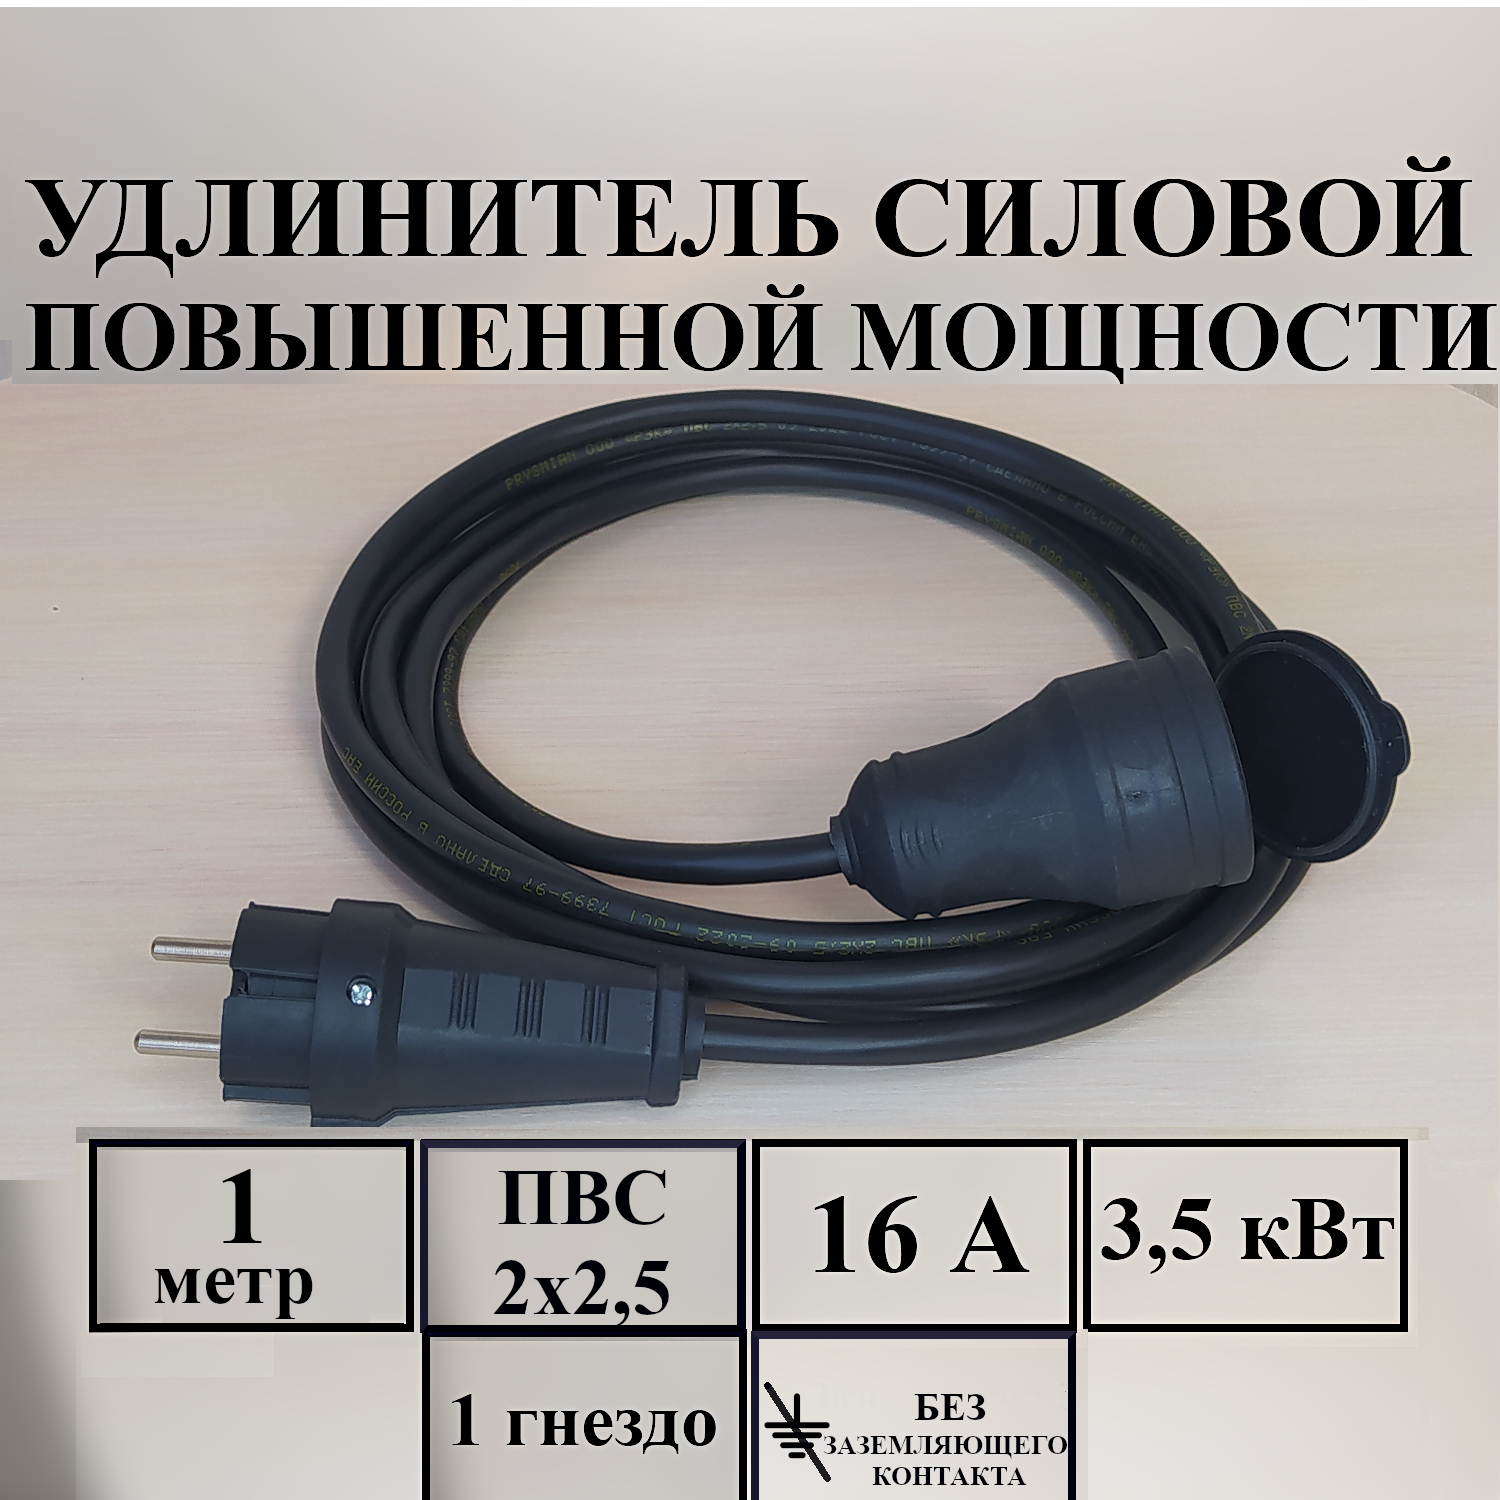 Удлинитель-шнур силовой электрический 1 м, 1 гн, 16 А, 3,5 кВт, ПВС 2х2,5 без з/к